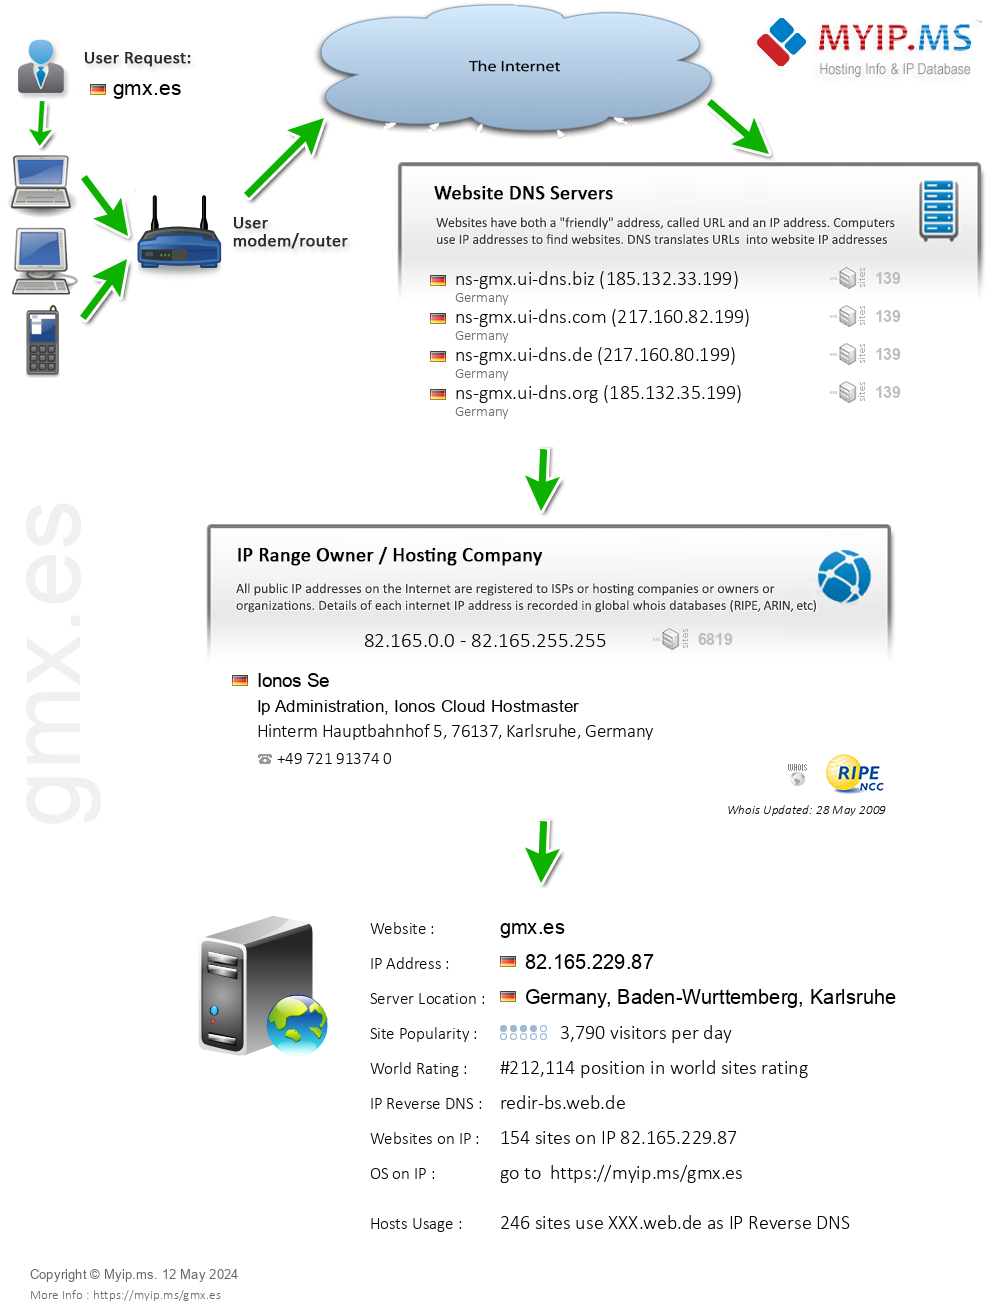 Gmx.es - Website Hosting Visual IP Diagram